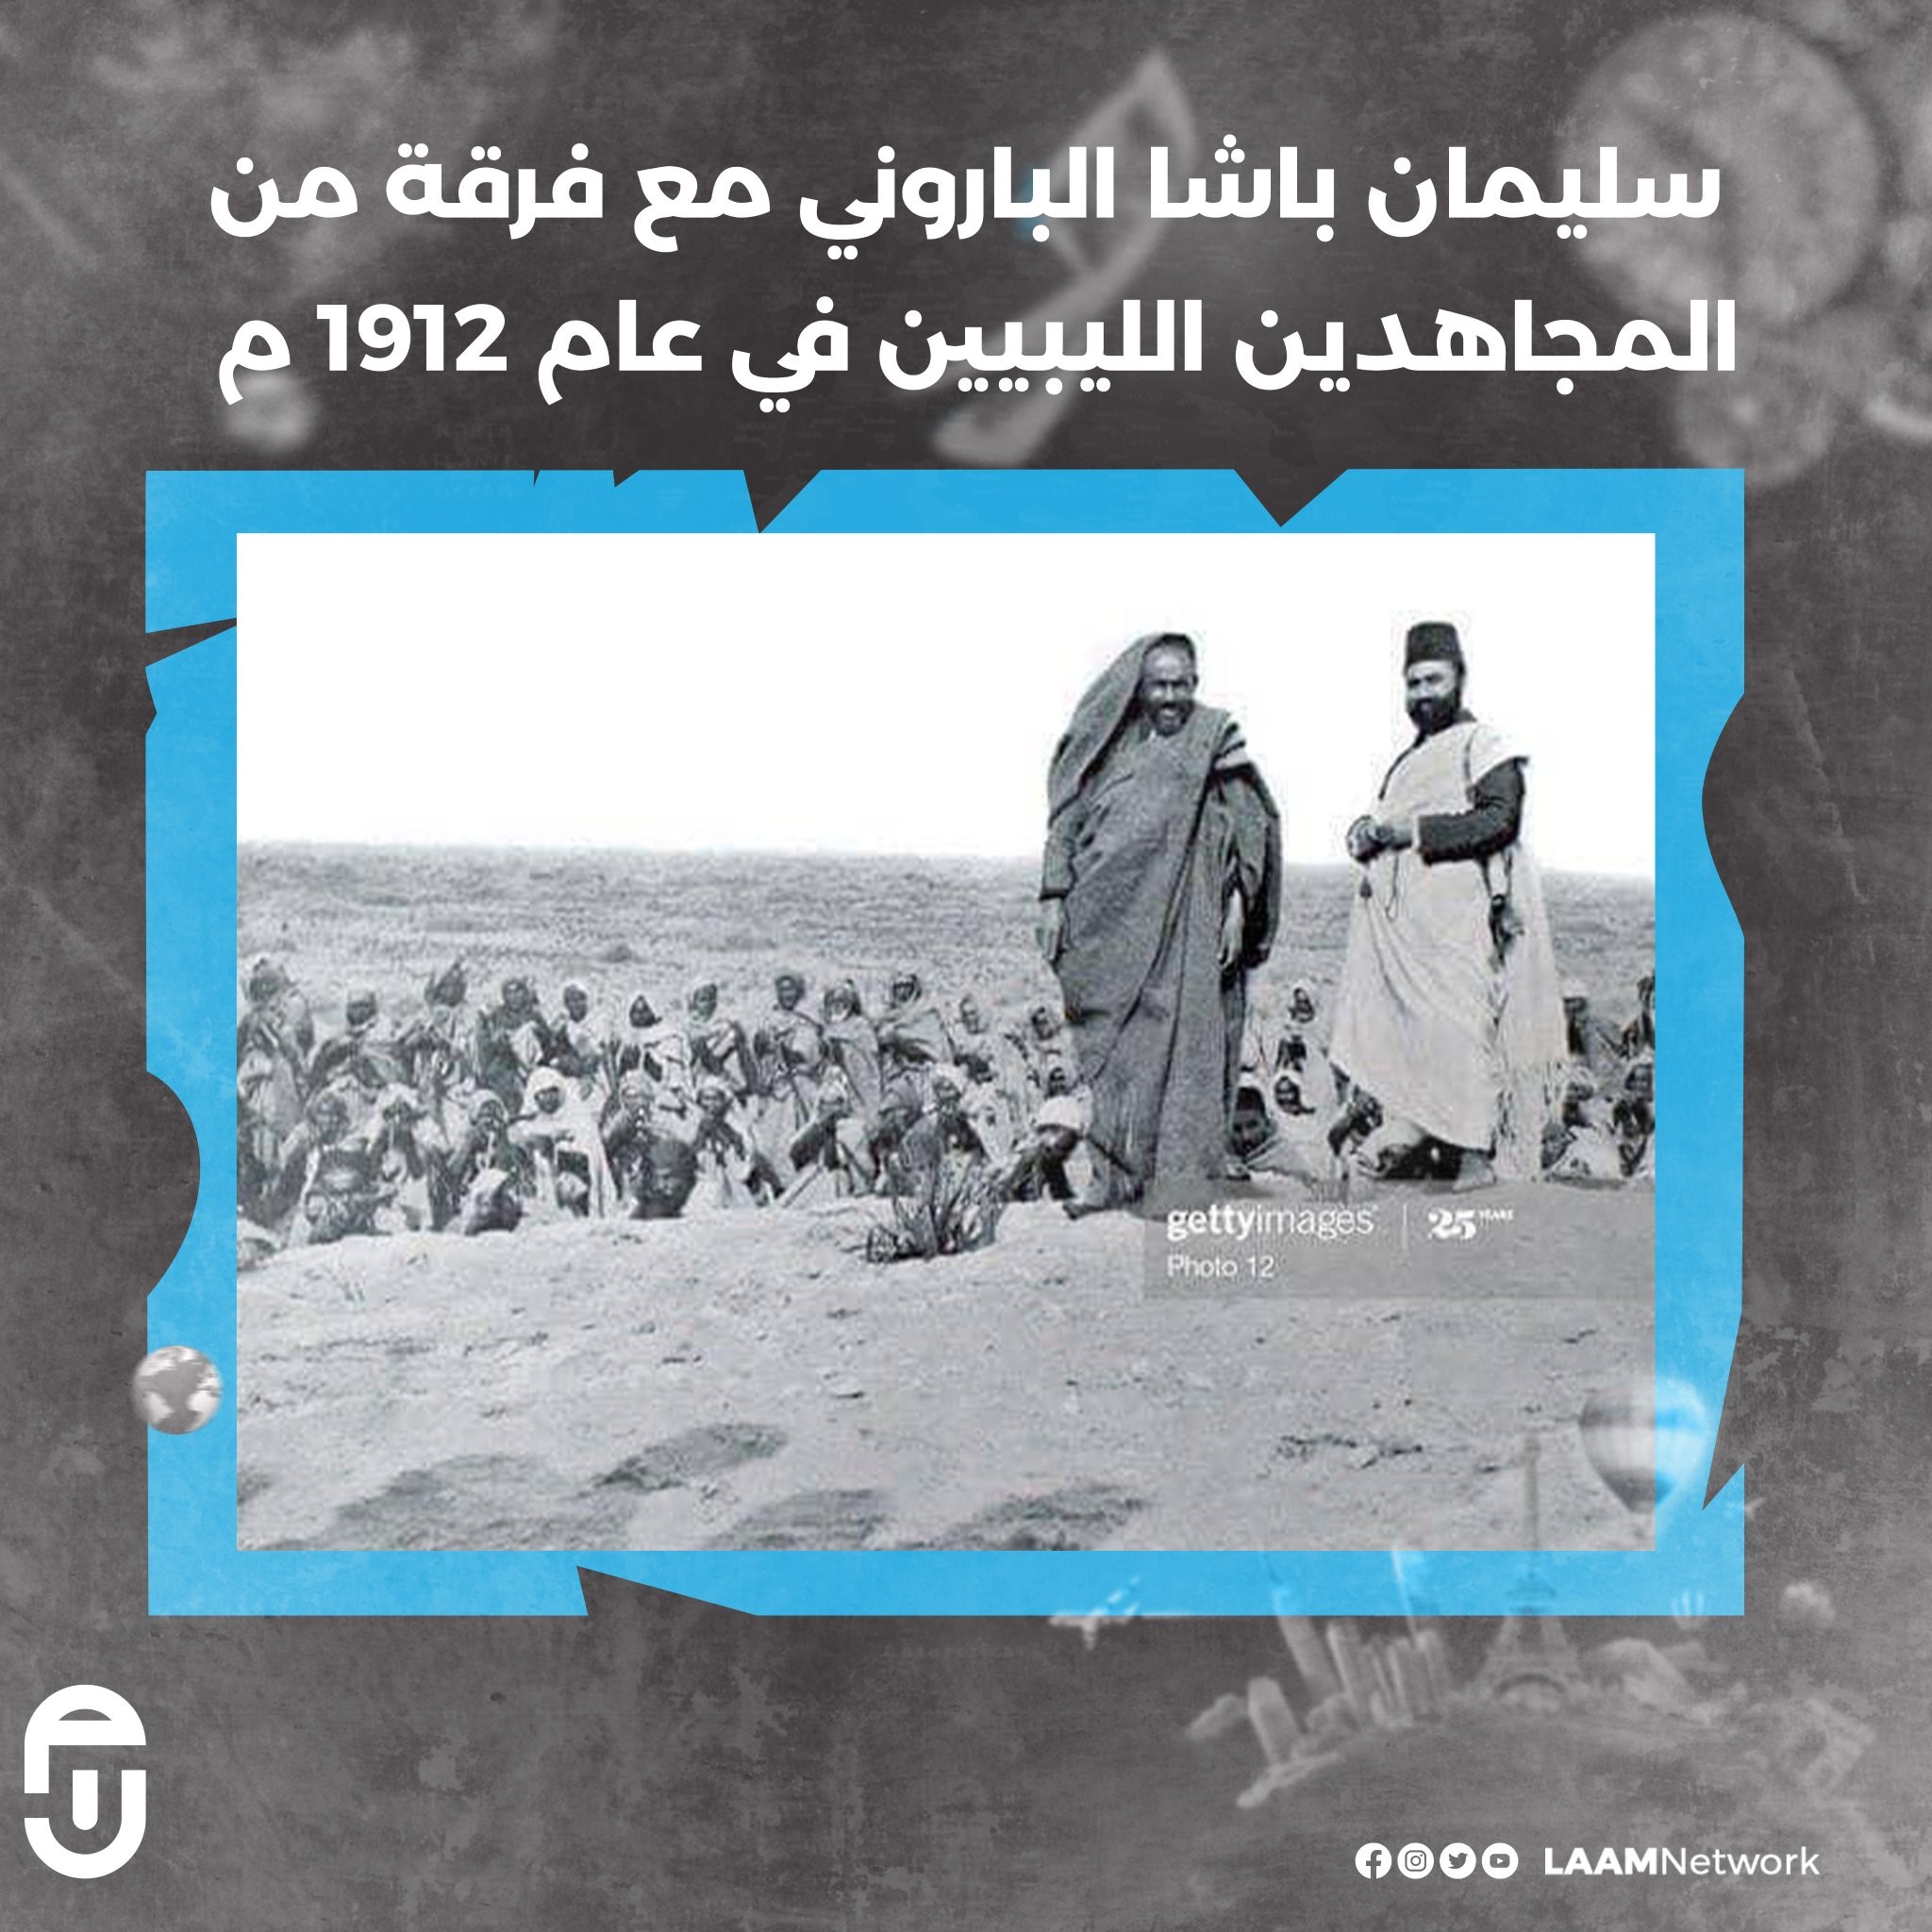 سليمان باشا الباروني مع فرقة من المجاهدين الليبيين بمدينة يفرن ويرجع تاريخ الصورة إلى عام 1912 م.jpg